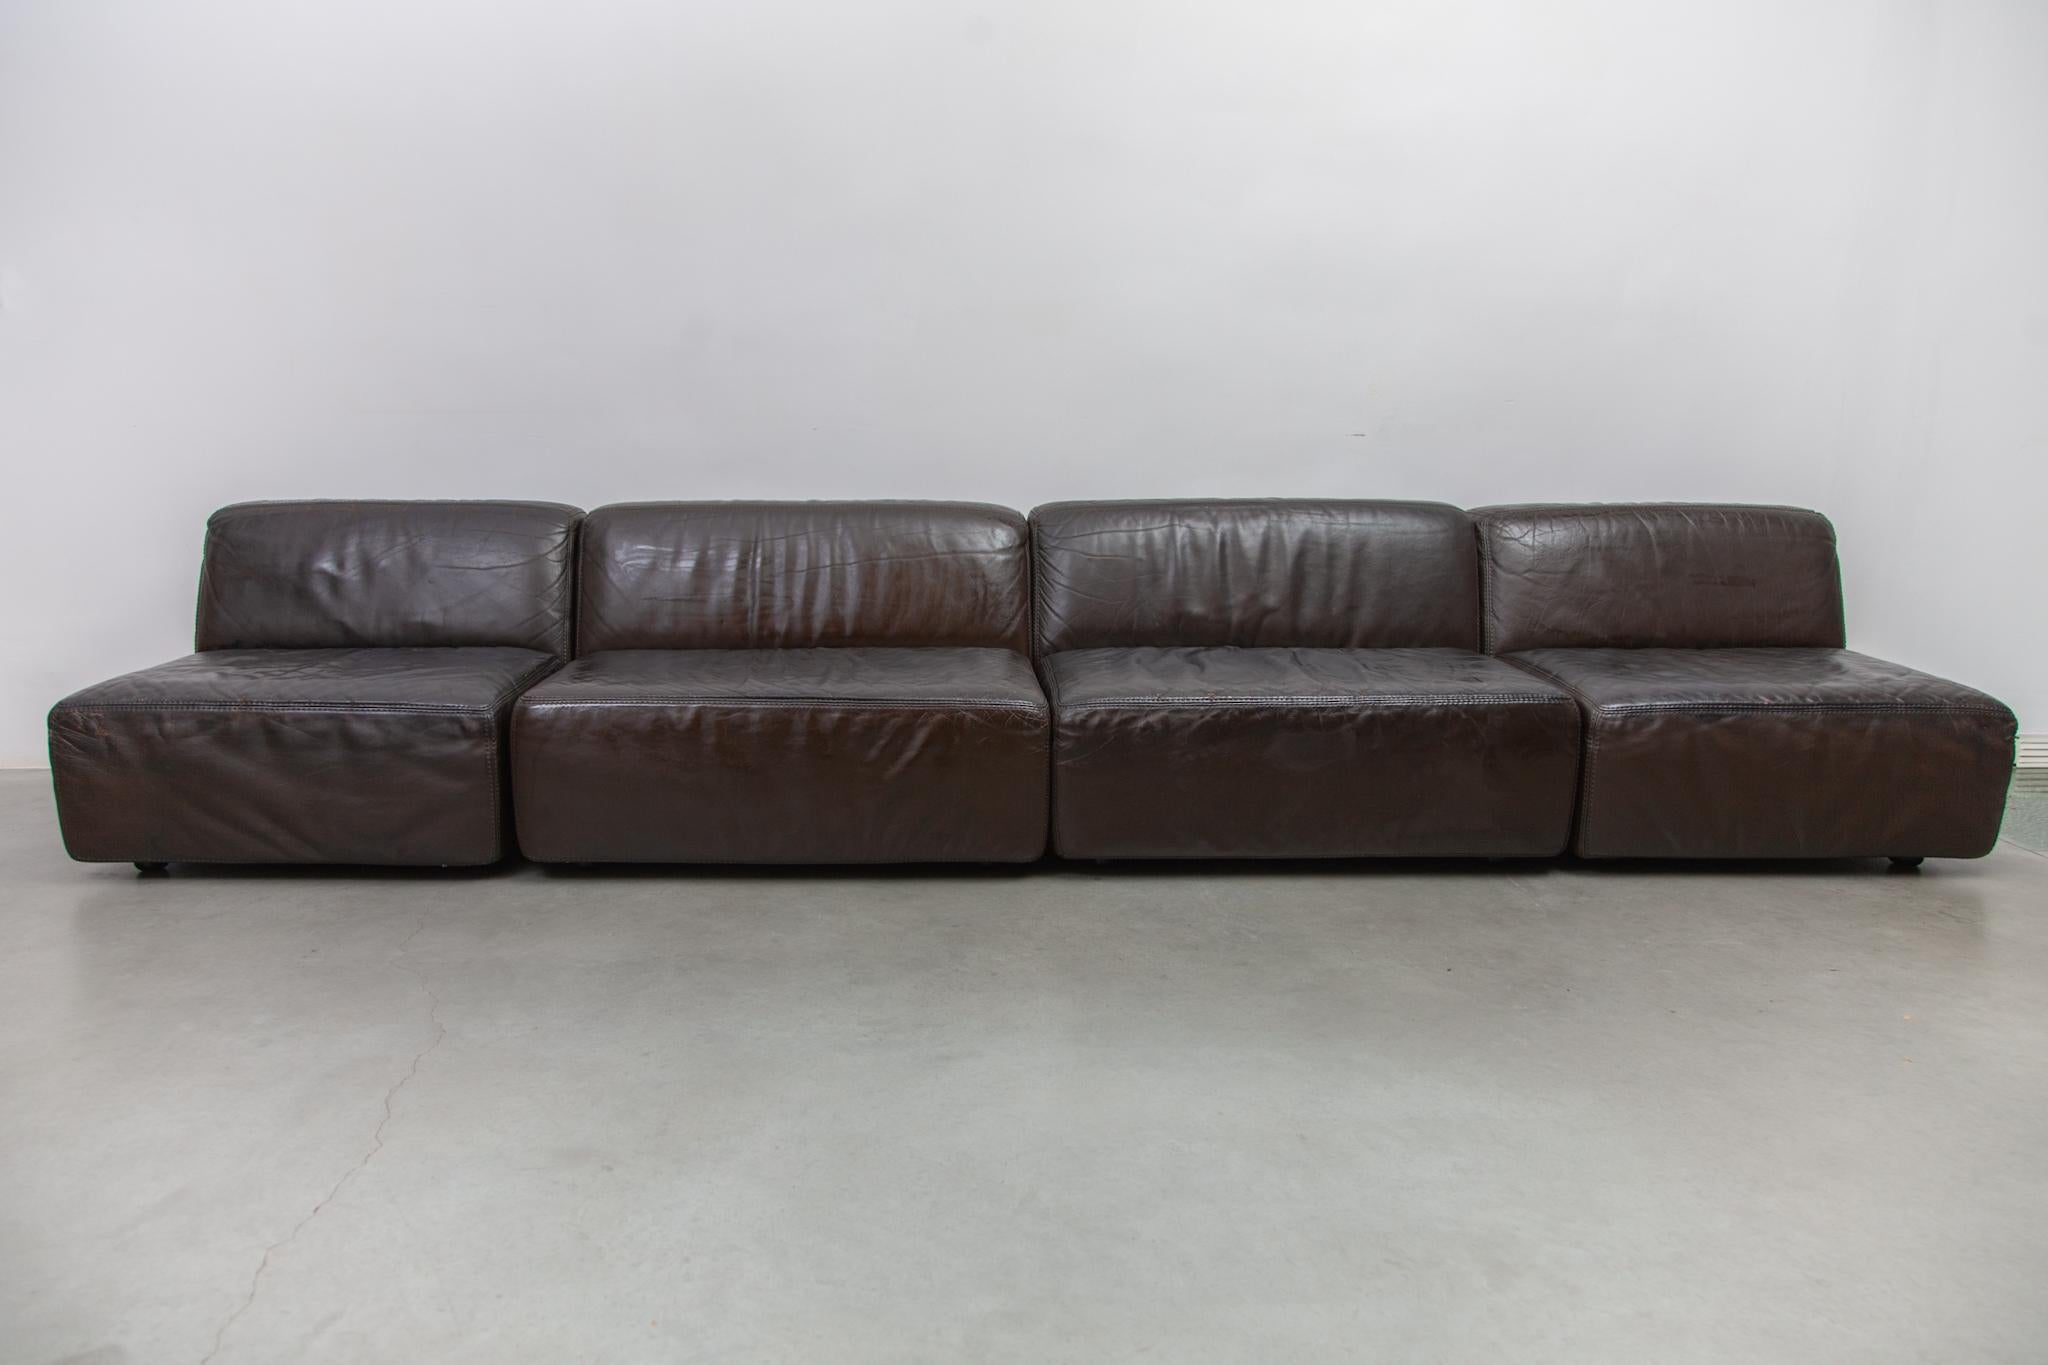 Schönes modulares Sofa, hergestellt von Durlet, Belgien, 1970er Jahre. Das Design stammt aus der Hand von Anita Schmidt. Schmidt arbeitet mit Durlet seit der Gründung des Unternehmens im Jahr 1966 zusammen. Form, Funktion und Ergonomie sind die